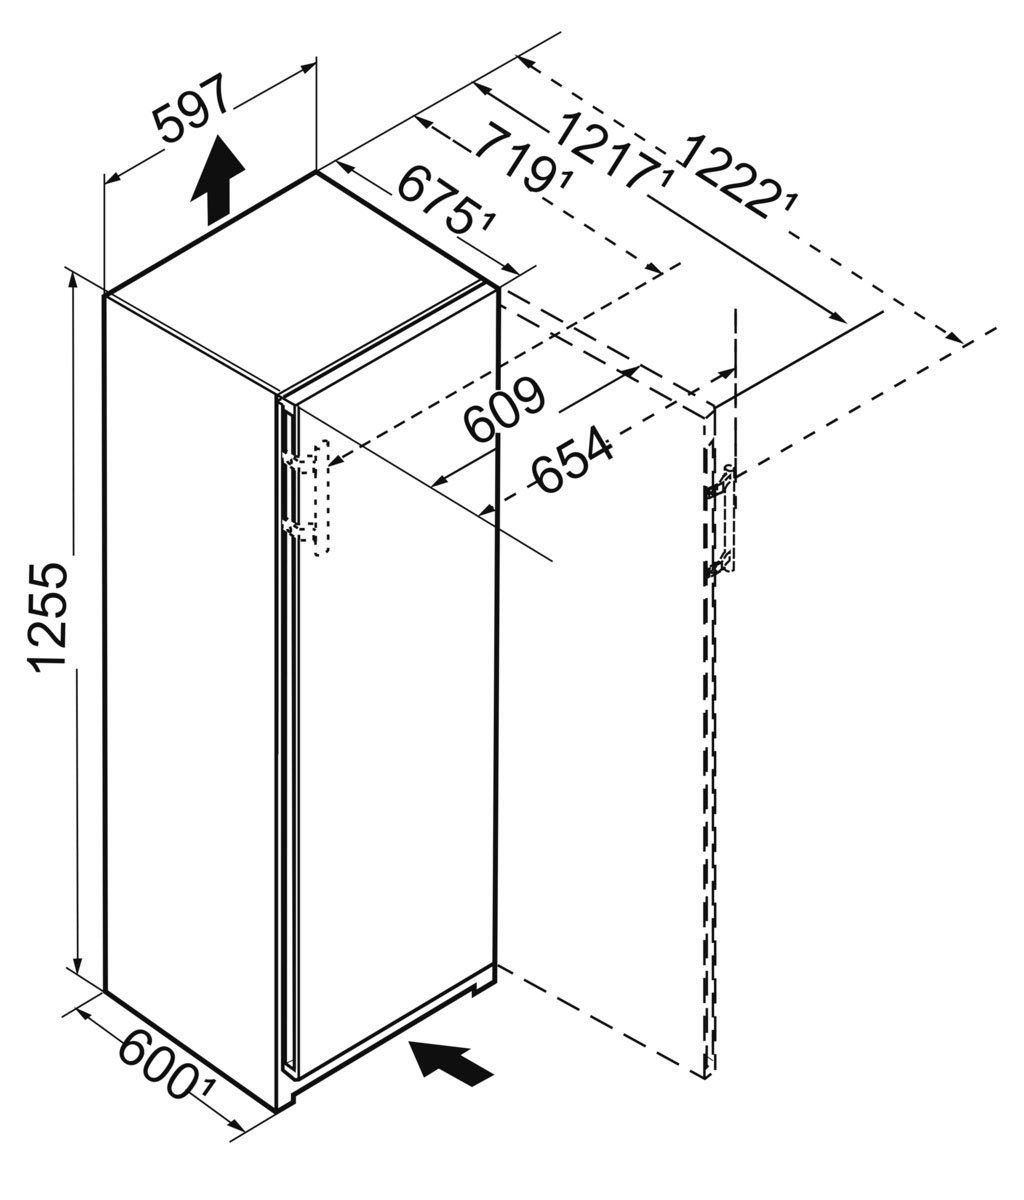 breit, BioFresh Kühlschrank mit Liebherr RBa 59,7 cm 4250-20, hoch, 125,5 cm